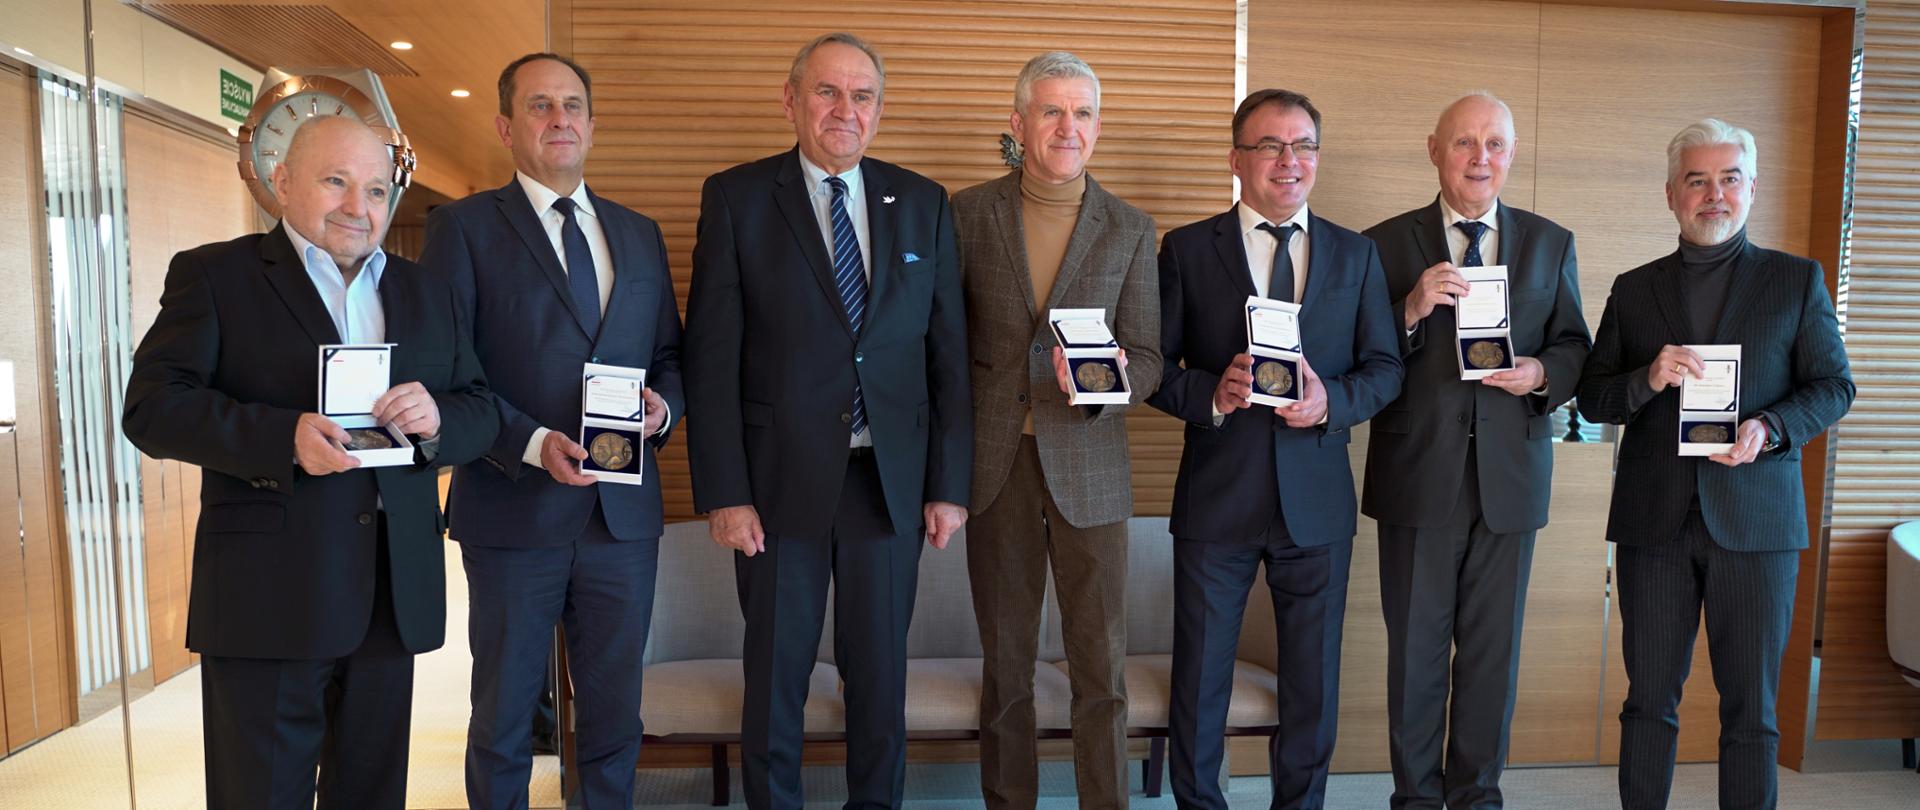 Do zdjęcia pozują elegancko ubrani mężczyźni. Sześciu z nich trzyma w rękach medale 100-lecia Polskiego Komitetu Olimpijskiego. 